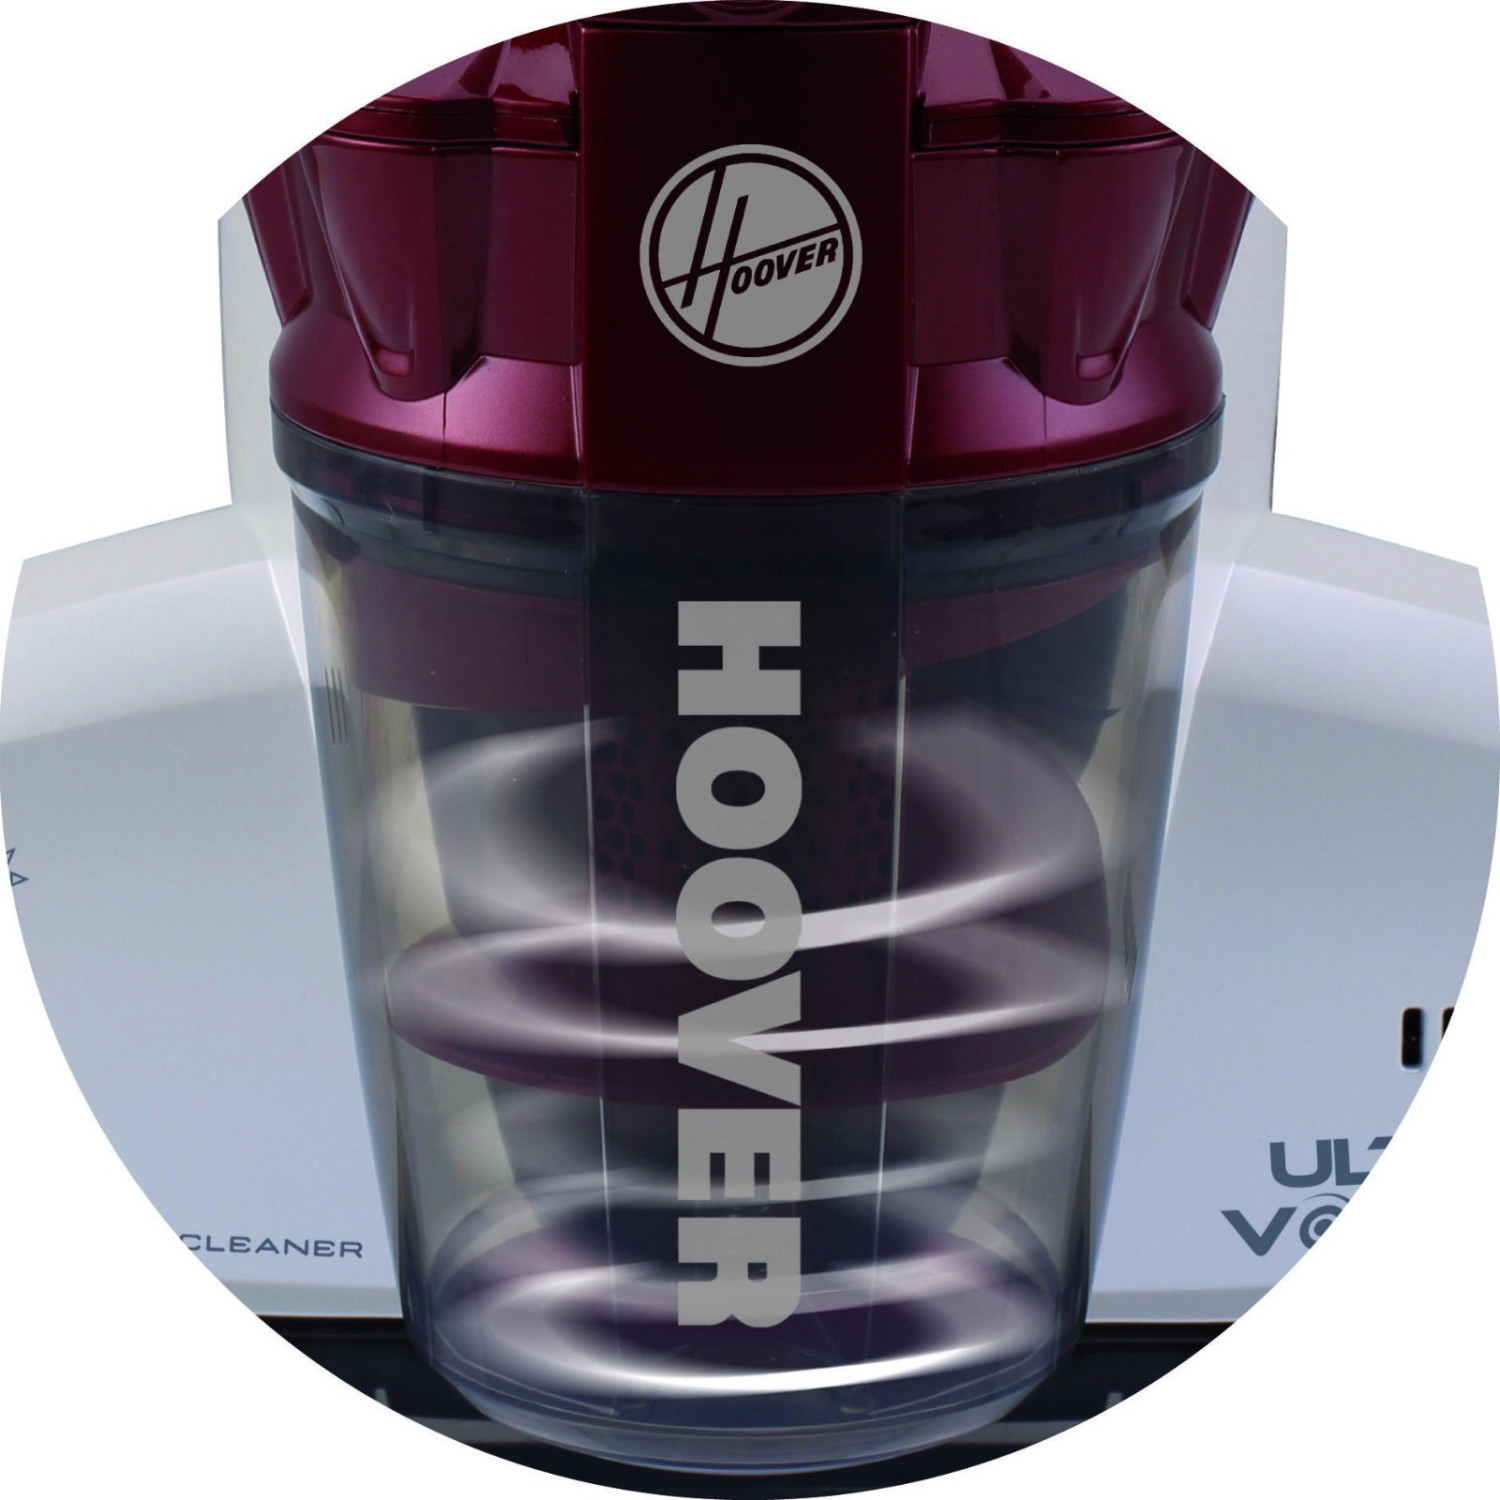 Hoover Ultra Vortex MBC500UV 011 Battimaterasso con Luce UV-C, 500W, 0,3 L,  Antiacaro, Antibatterica, Rimuove Allergeni e Polvere, 3 Programmi, Rosso